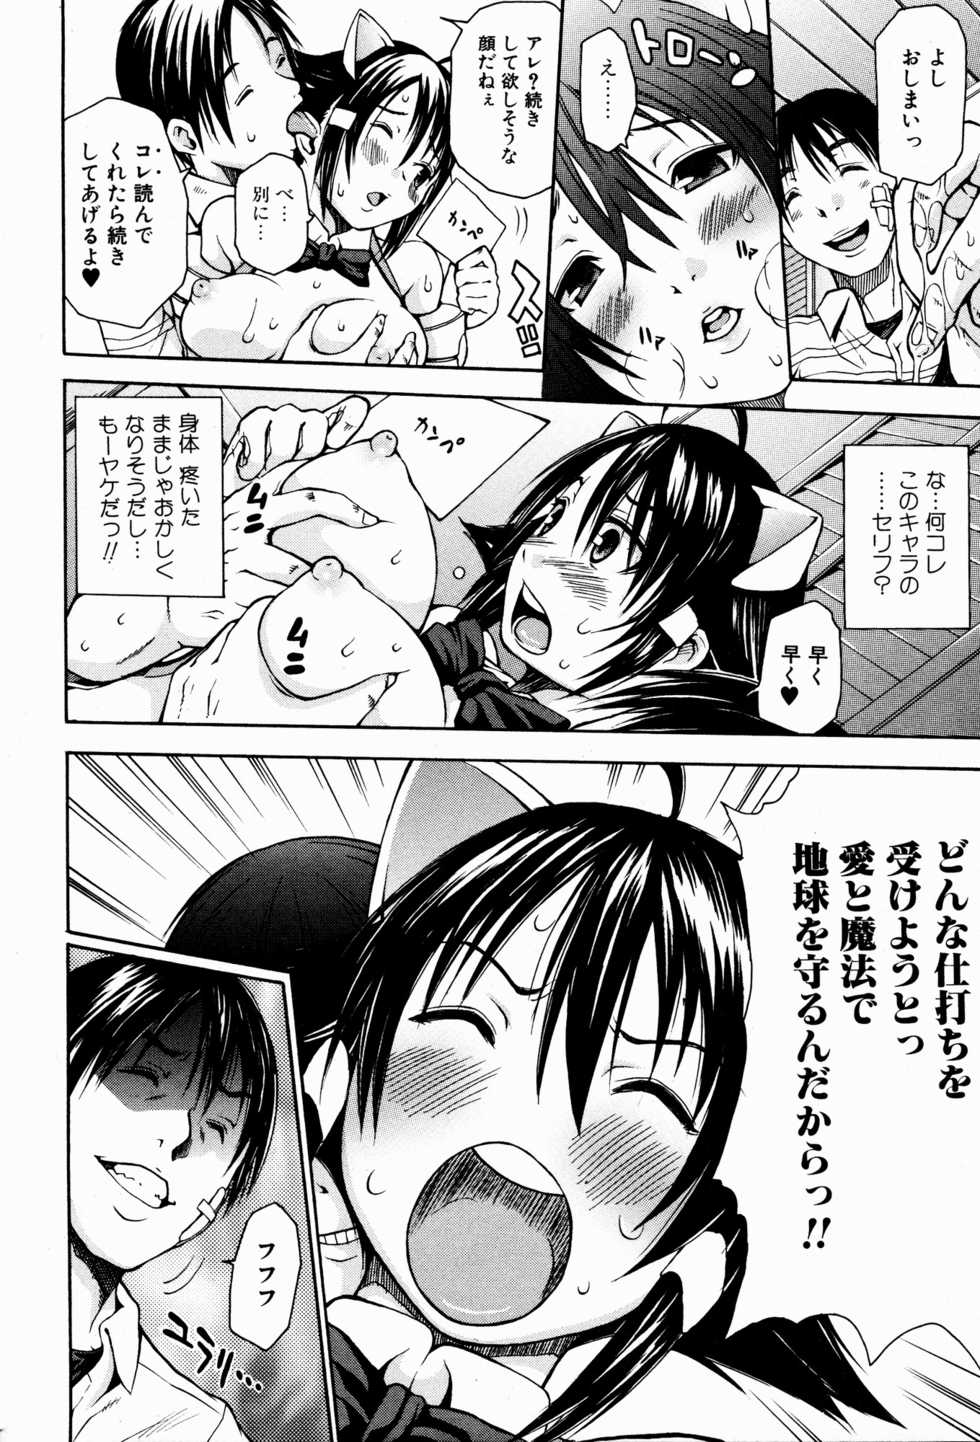 Bishoujo Kakumei KIWAME 2009-08 Vol. 3 - Page 20